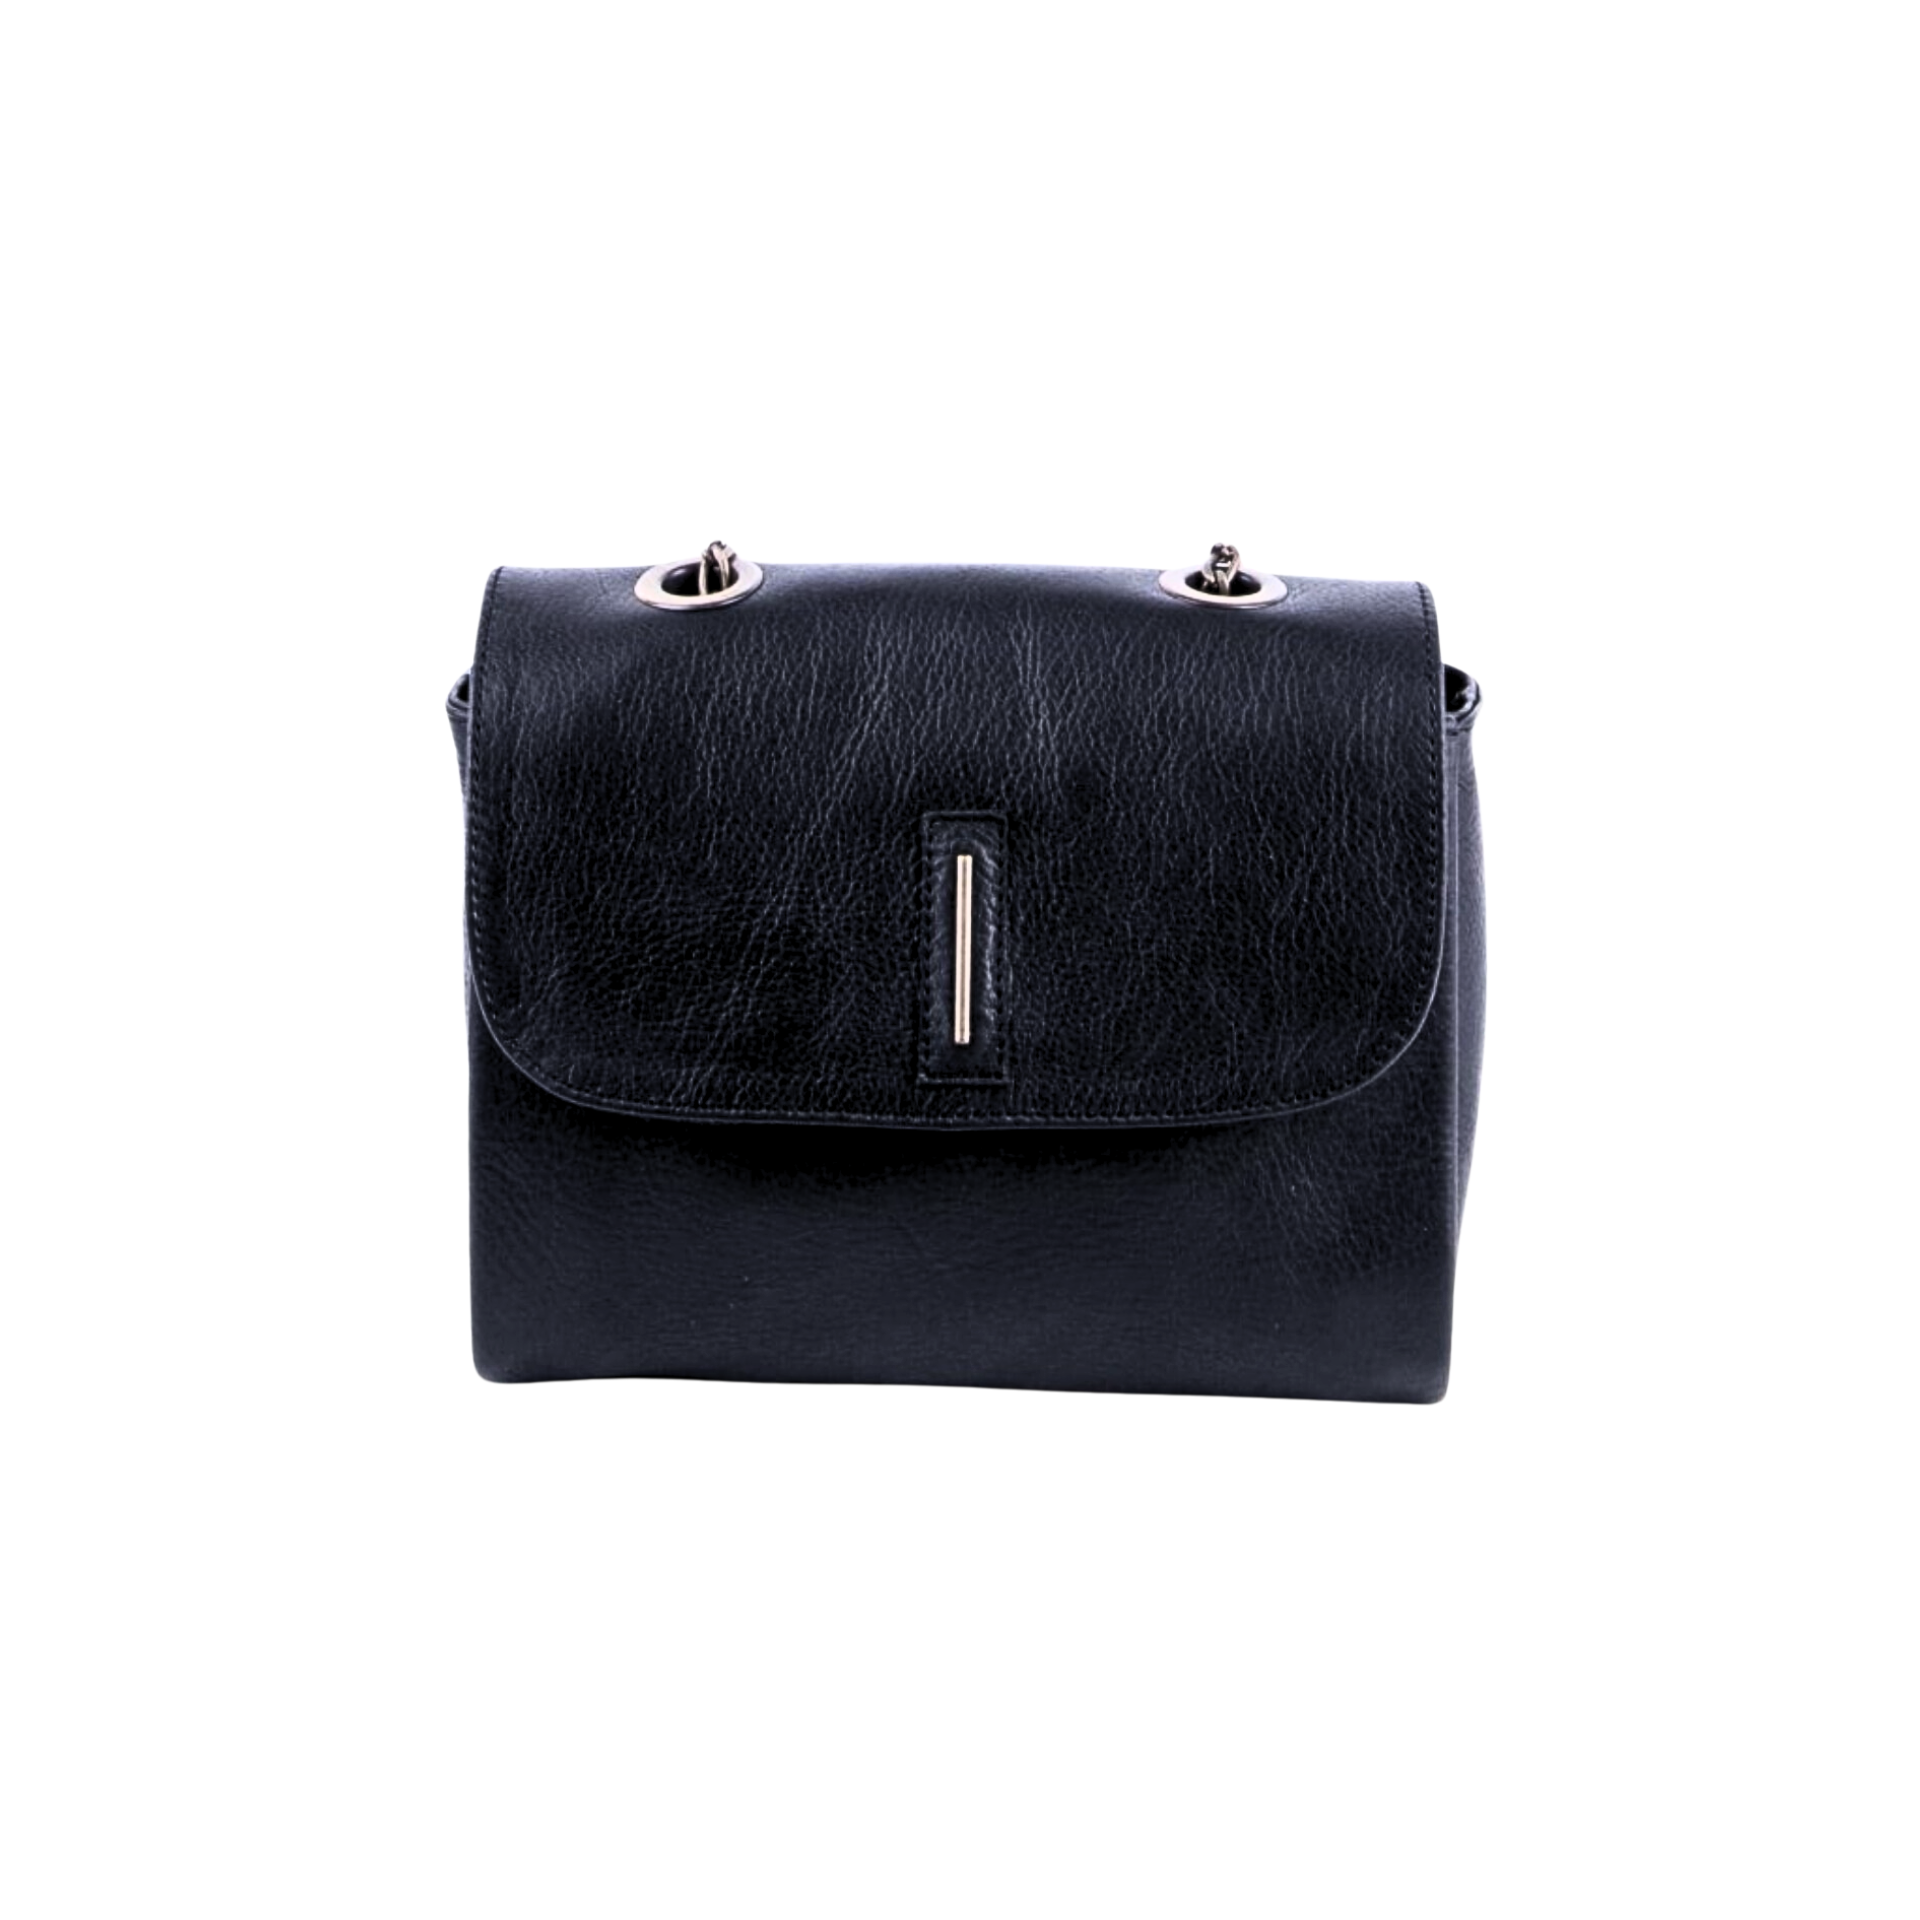 Dolly mousse black - black leather shoulder clutch bag 